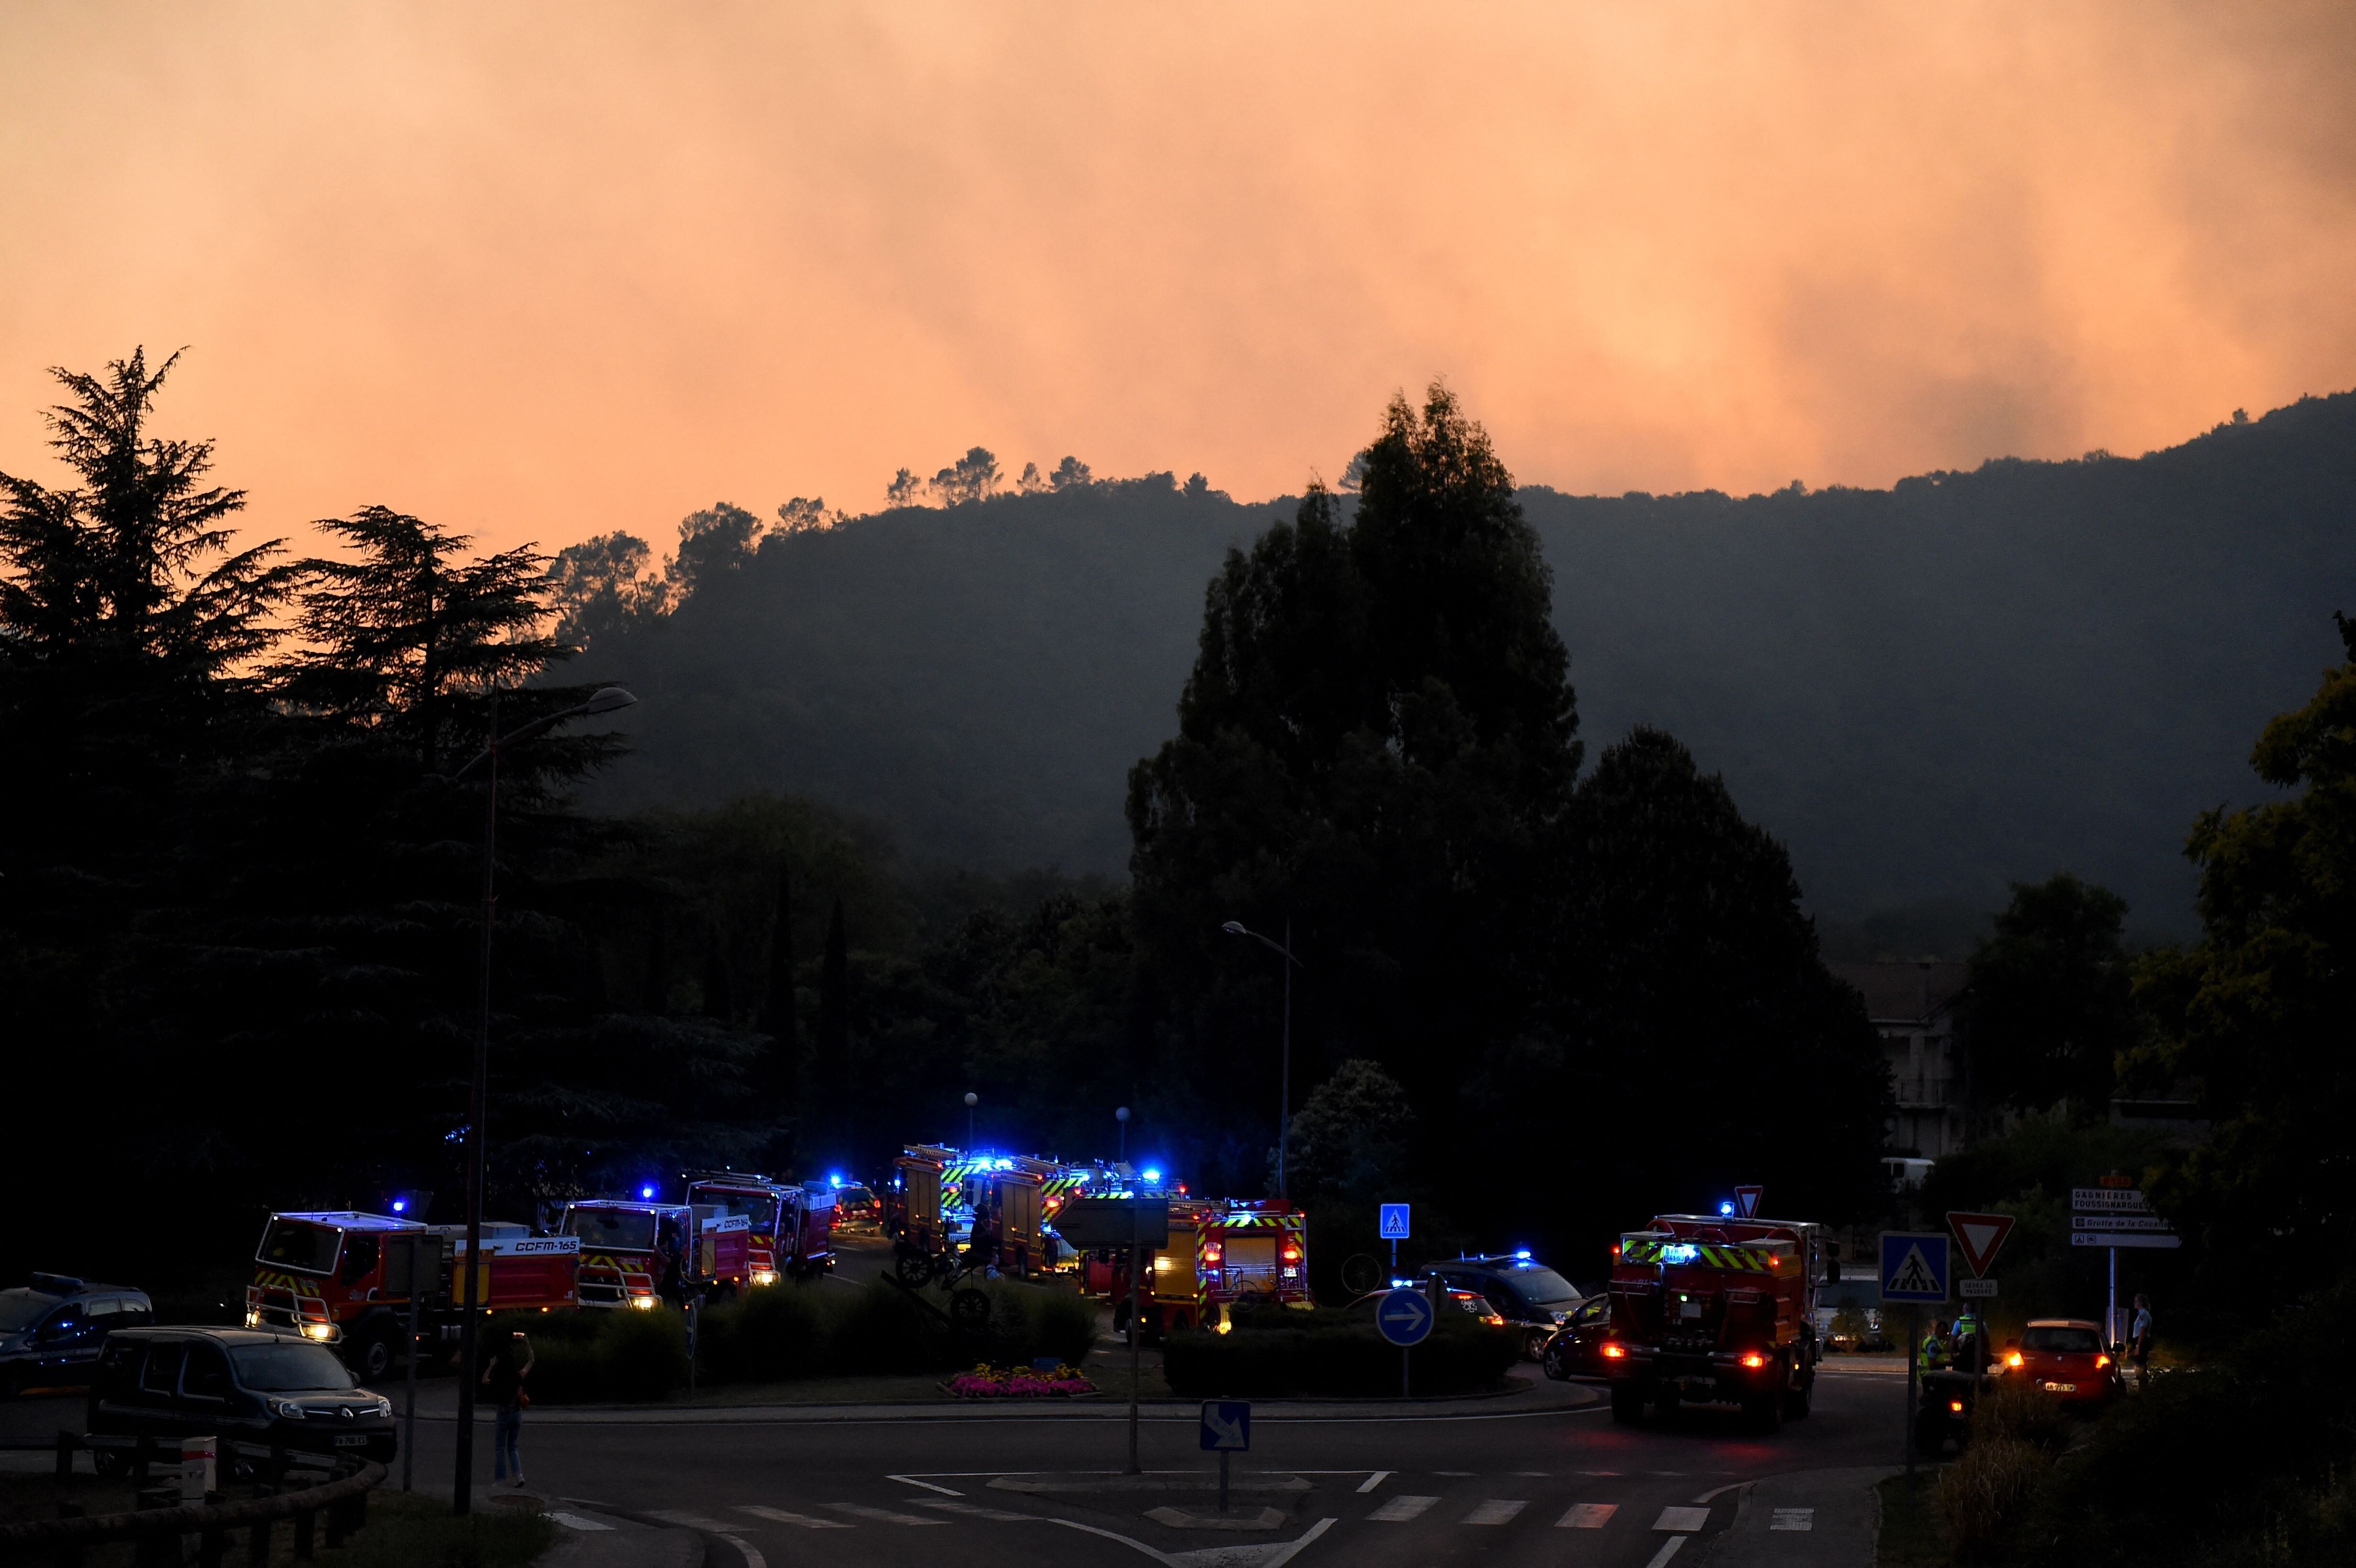 Des véhicules de pompiers rassemblés alors qu'un incendie fait rage sur la colline derrière...